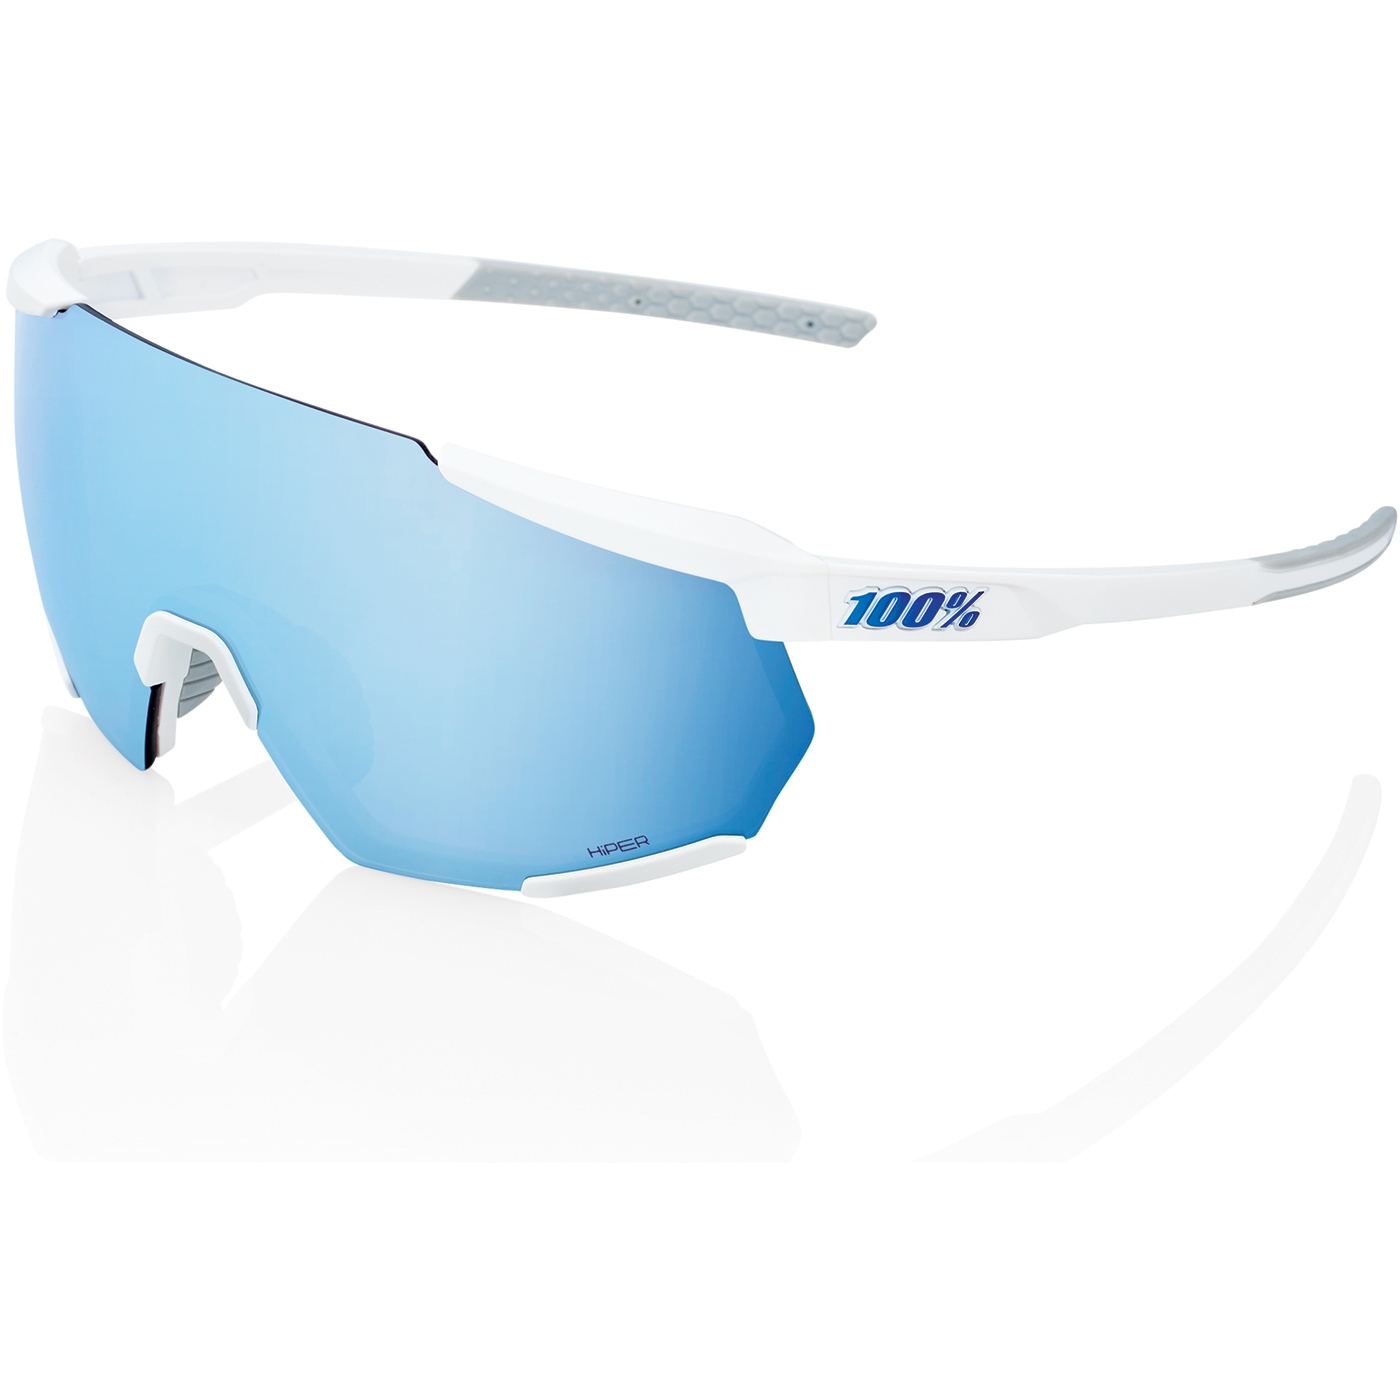 Produktbild von 100% Racetrap 3.0 Brille - HiPER Mirror Lens - Matte White / Multilayer Blue + Clear